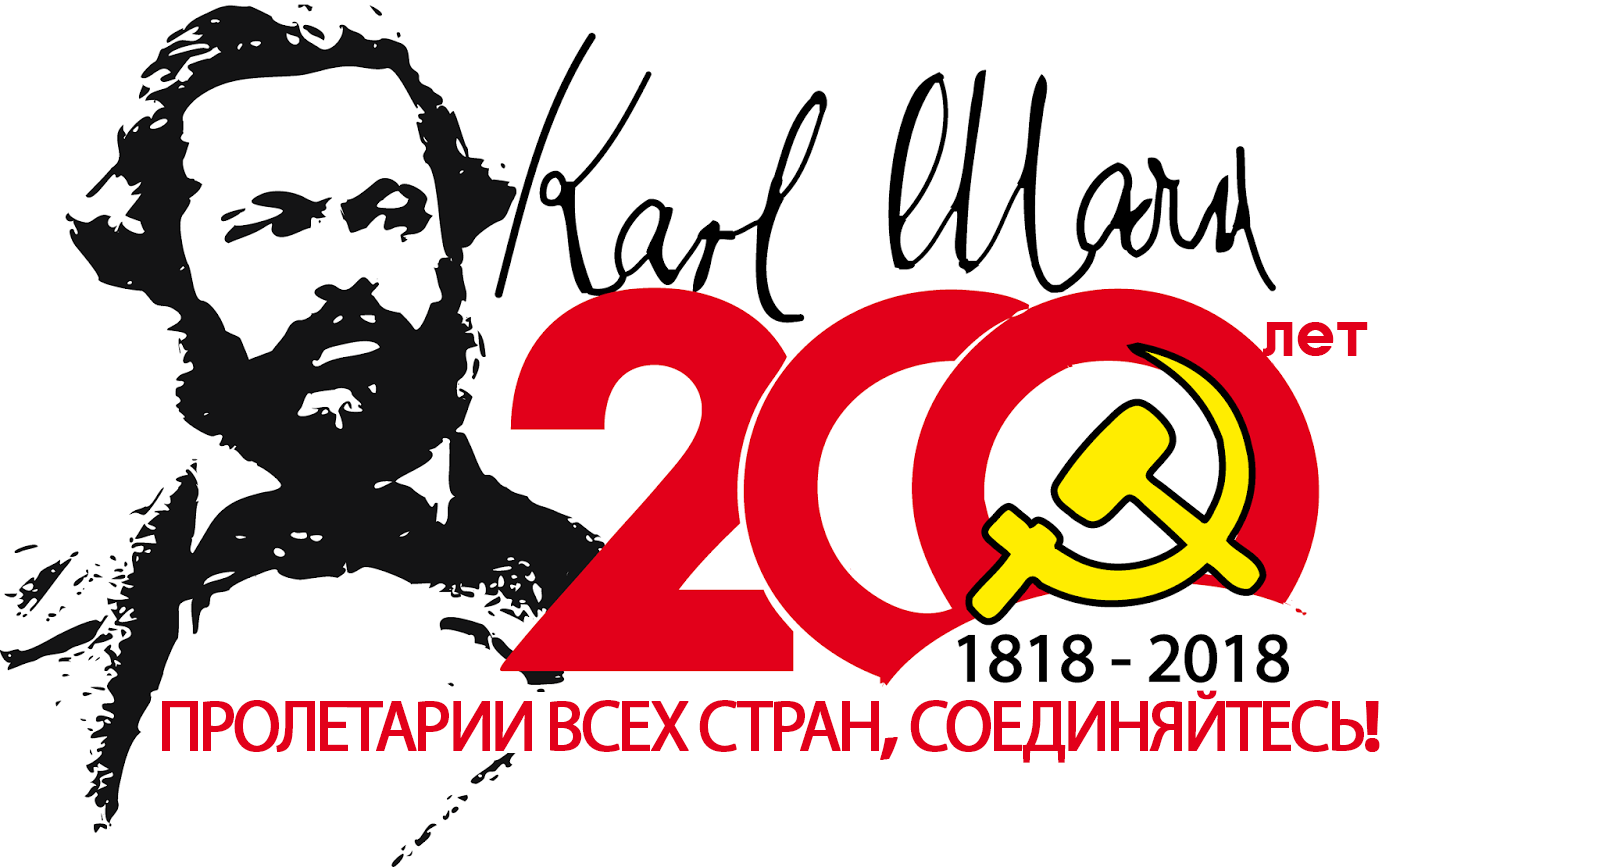 200 logo ru